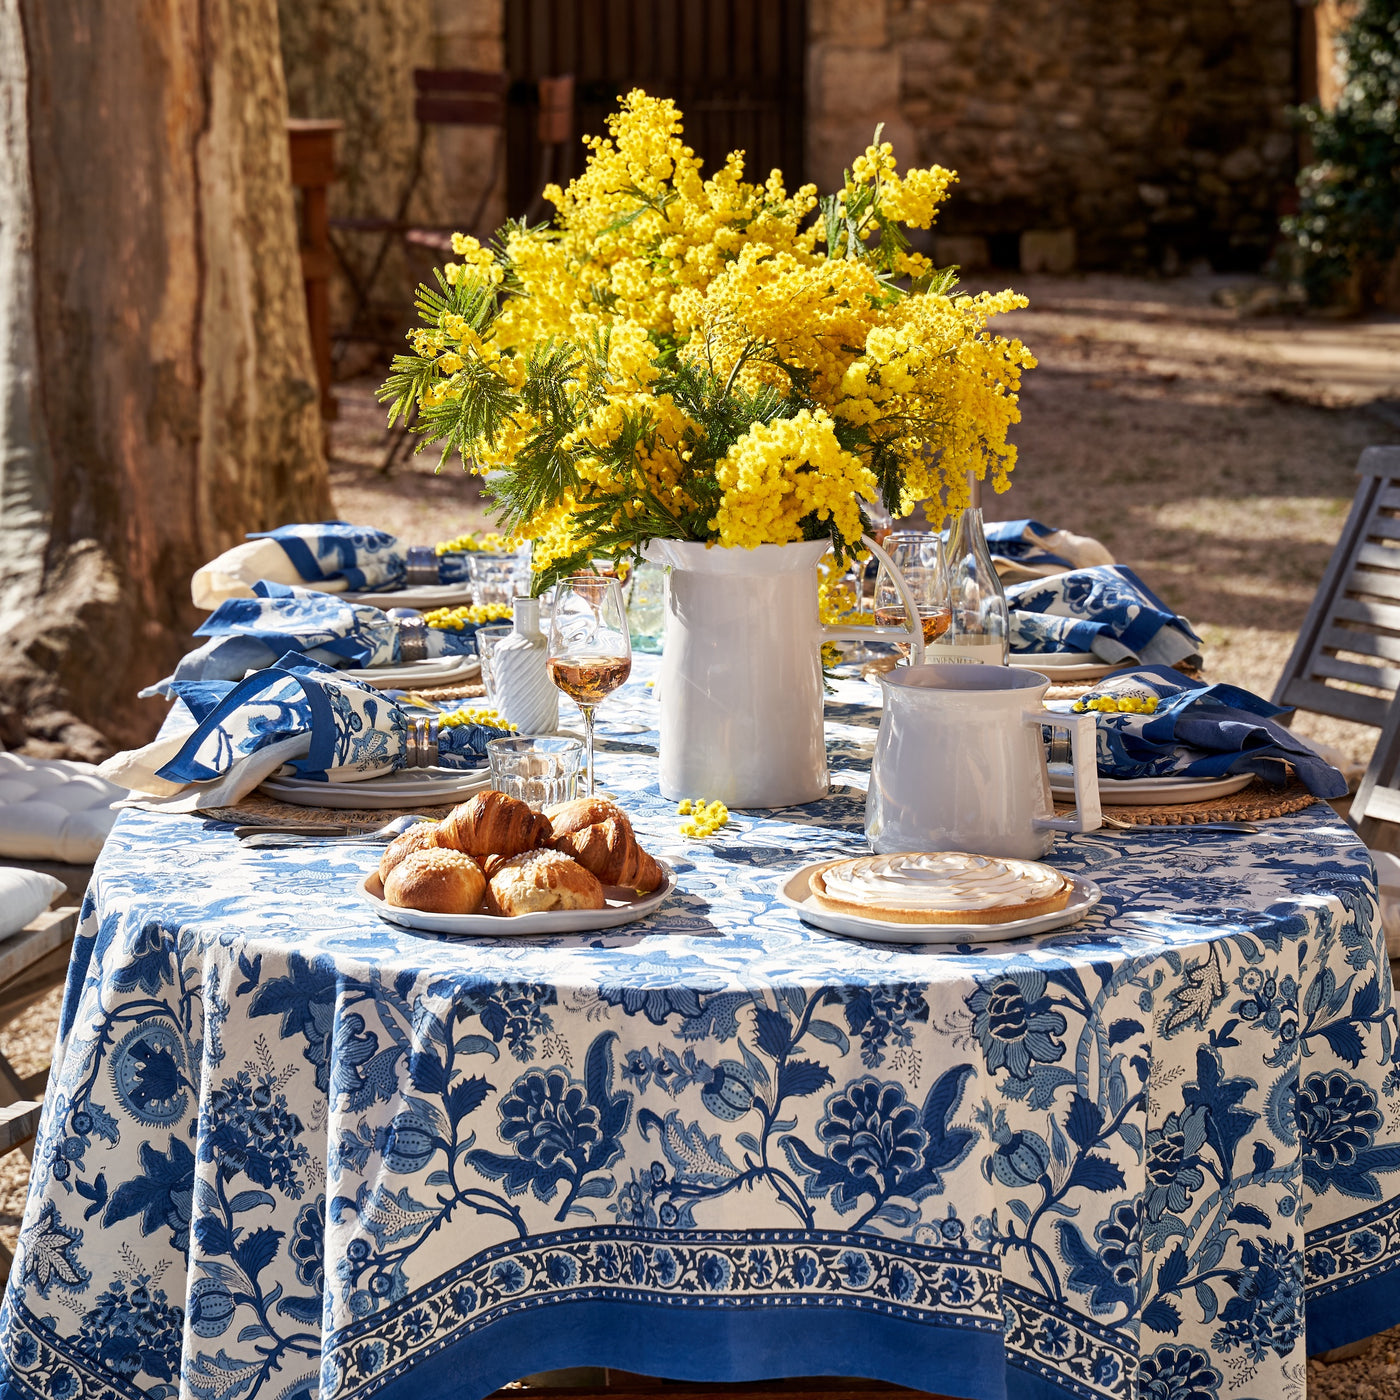 French Tablecloth Coromandel Delft